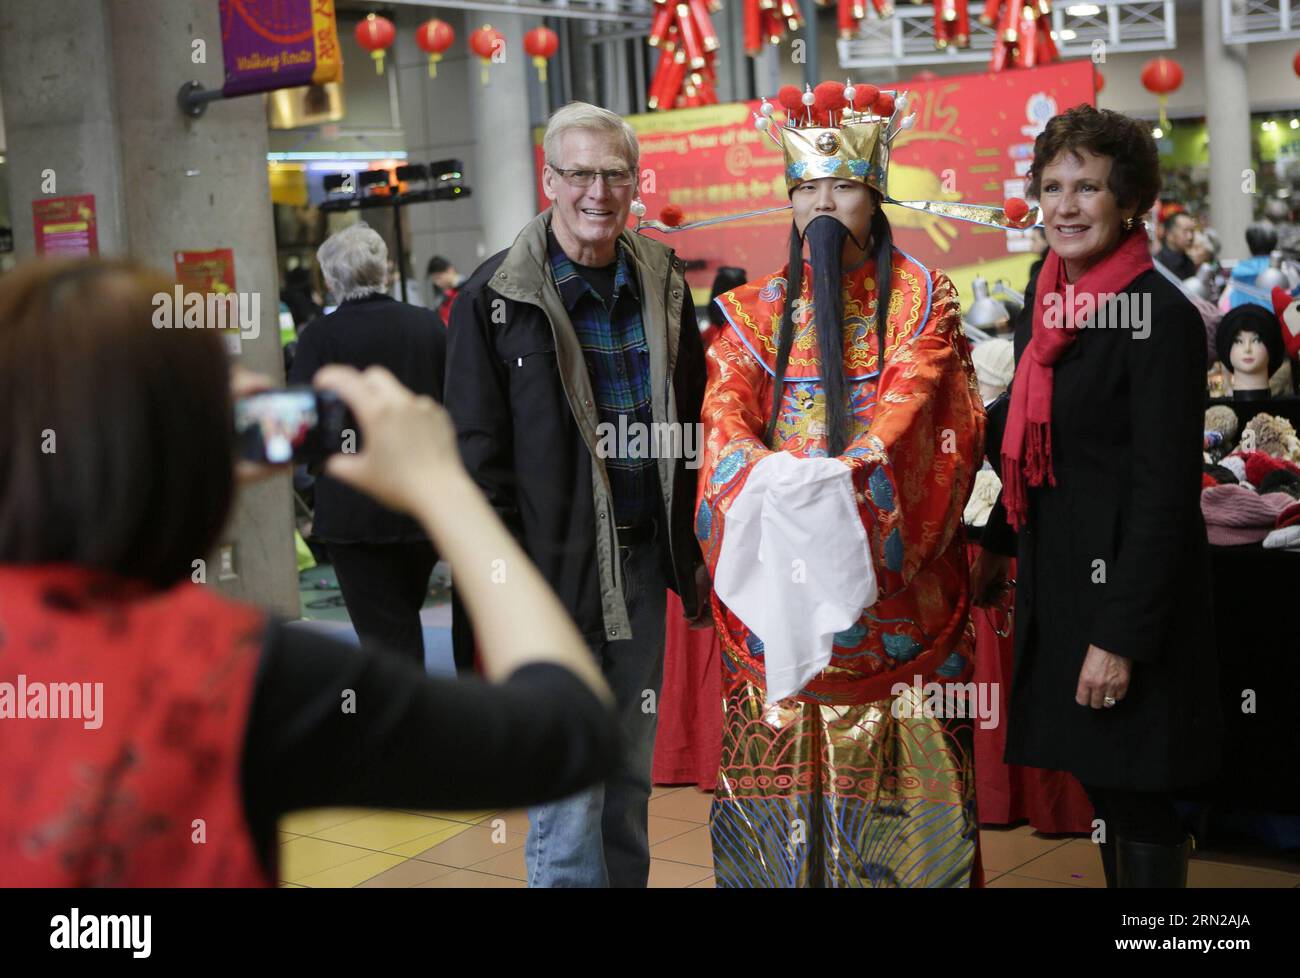 Die Bewohner machen Fotos mit dem Gott des Glücks in einem Einkaufszentrum in Chinatown in Vancouver, Kanada, 21. Februar 2015. Die Menschen nehmen an verschiedenen Neujahrsaktivitäten in Vancouvers Chinatown Teil, um das chinesische trationale Frühlingsfest zu feiern. ) KANADA-VANCOUVER-CHINESISCHES FRÜHLINGSFEST LiangxSen PUBLICATIONxNOTxINxCHN Bewohner machen Fotos mit dem Gott des Glücks in einem Einkaufszentrum IN China Town in Vancouver Kanada 21. Februar 2015 Prominente nehmen an verschiedenen Neujahrsaktivitäten in Vancouver S China Town Teil, um das chinesische trationale Frühlingsfest Canada Va zu feiern Stockfoto